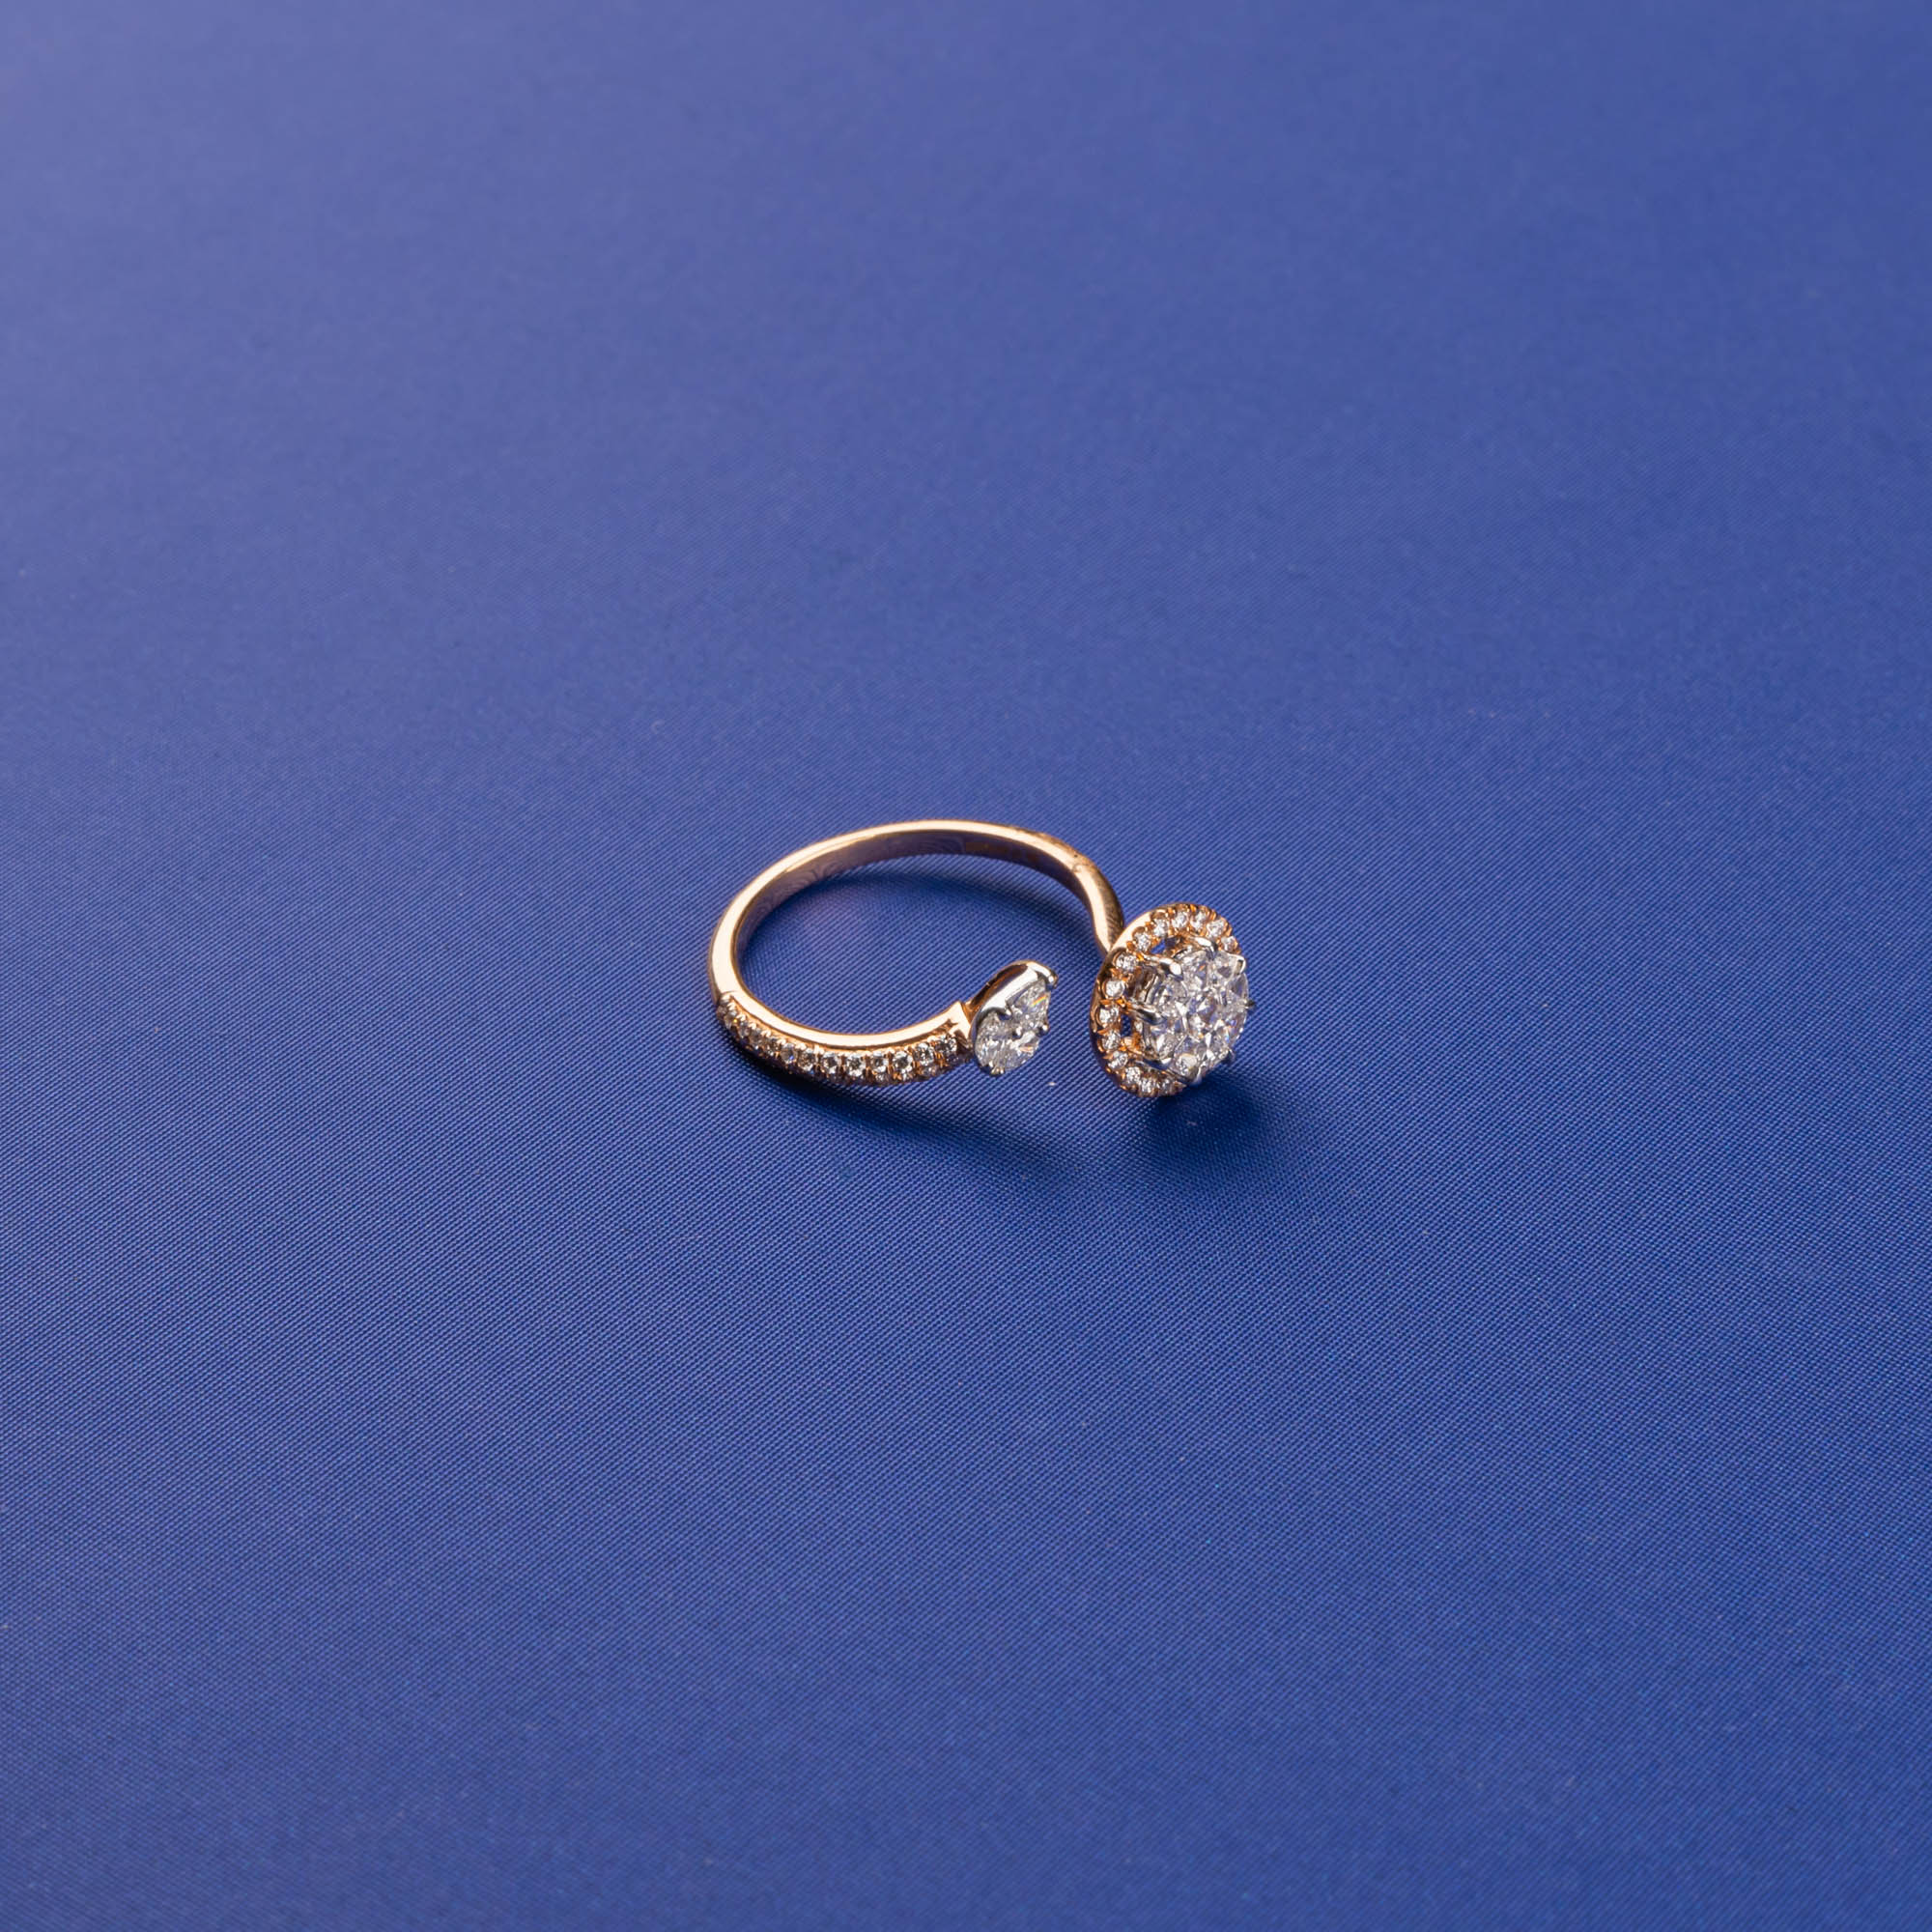 Delicate Splendor: Handmade 18K Rose Gold Diamond Ring